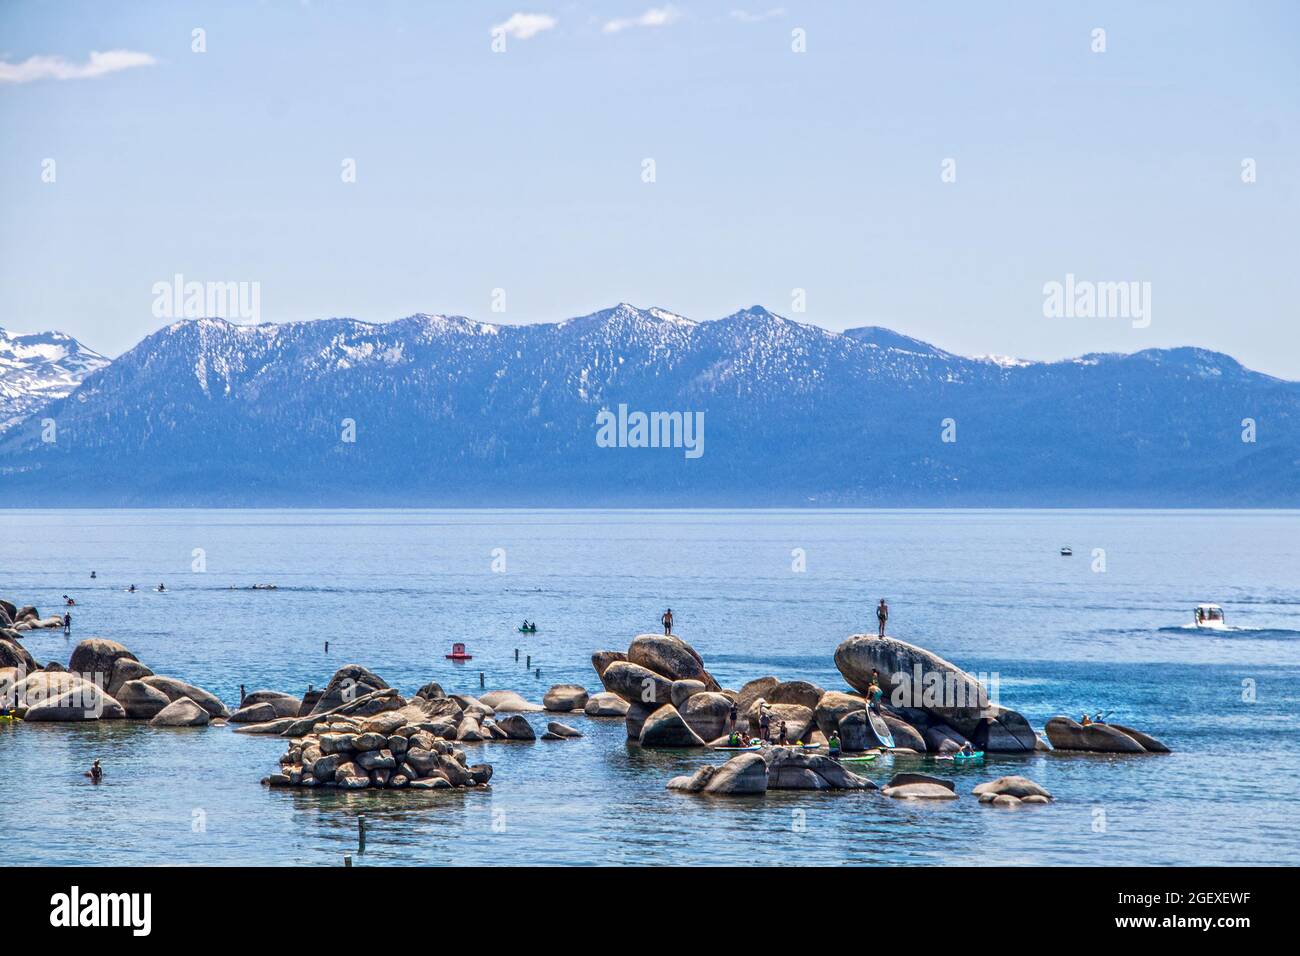 Touristes dans l'eau sur des paddleboards et escalade sur des rochers dans le lac Tahoe bleu avec des montagnes enneigées à distance Banque D'Images